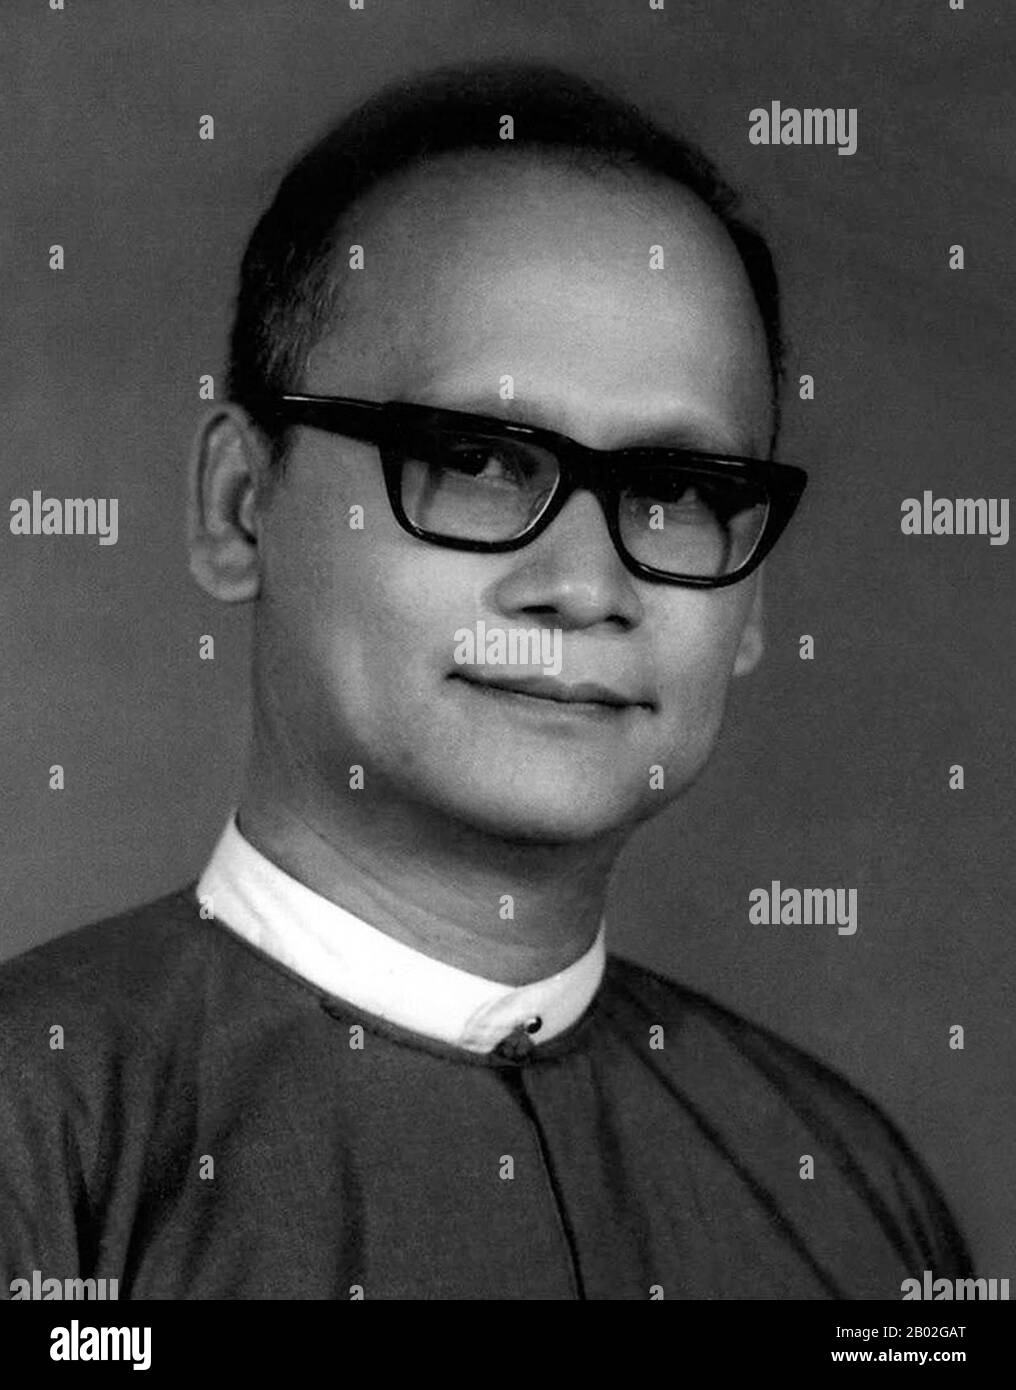 Le Dr Maung Maung a servi en qualité juridique dans le gouvernement intérimaire du général Ne Win de 1958 à 1960. Suite au coup d'État militaire de 1962 De Ne Win, Maung Maung est devenu juge en chef et, bien qu'un civil, était un membre éminent du comité central du BSPP. Il a joué un rôle important dans l'élaboration de la Constitution de 1974 et des changements ultérieurs au système judiciaire. Le 19 août 1988, au milieu d'une série de manifestations à grande échelle, l'Assemblée Populaire a déclaré Maung Maung Président et Président du BSPP. Les manifestations anti-gouvernementales se sont poursuivies et des perturbations généralisées ont entraîné un nouveau mili Banque D'Images